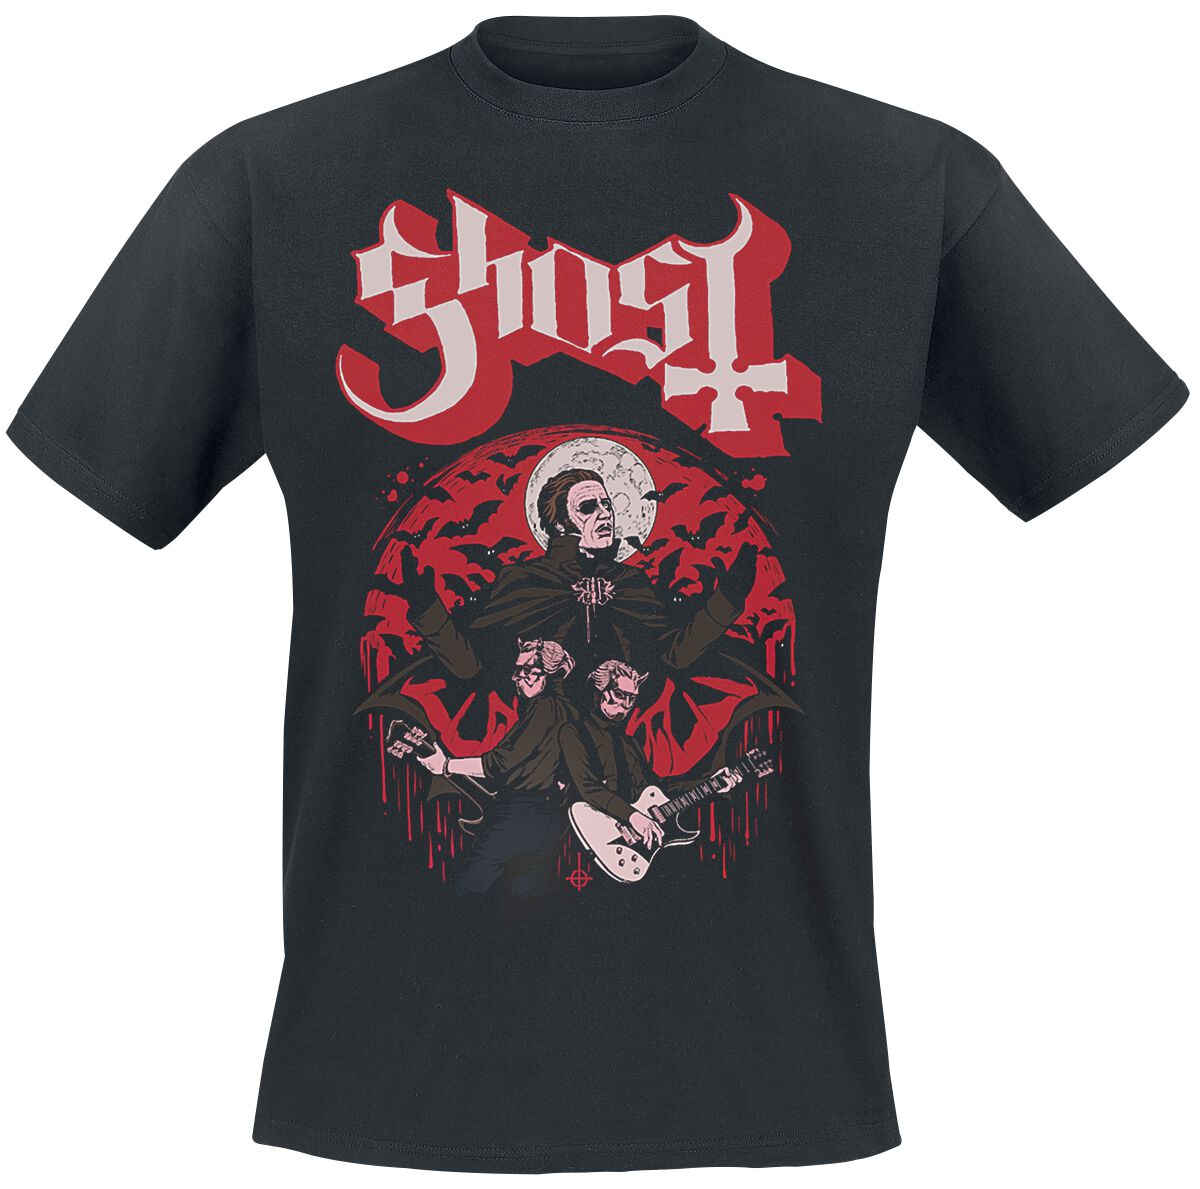 Ghost T-Shirt - Guitars - S bis 5XL - für Männer - Größe 4XL - schwarz  - Lizenziertes Merchandise!